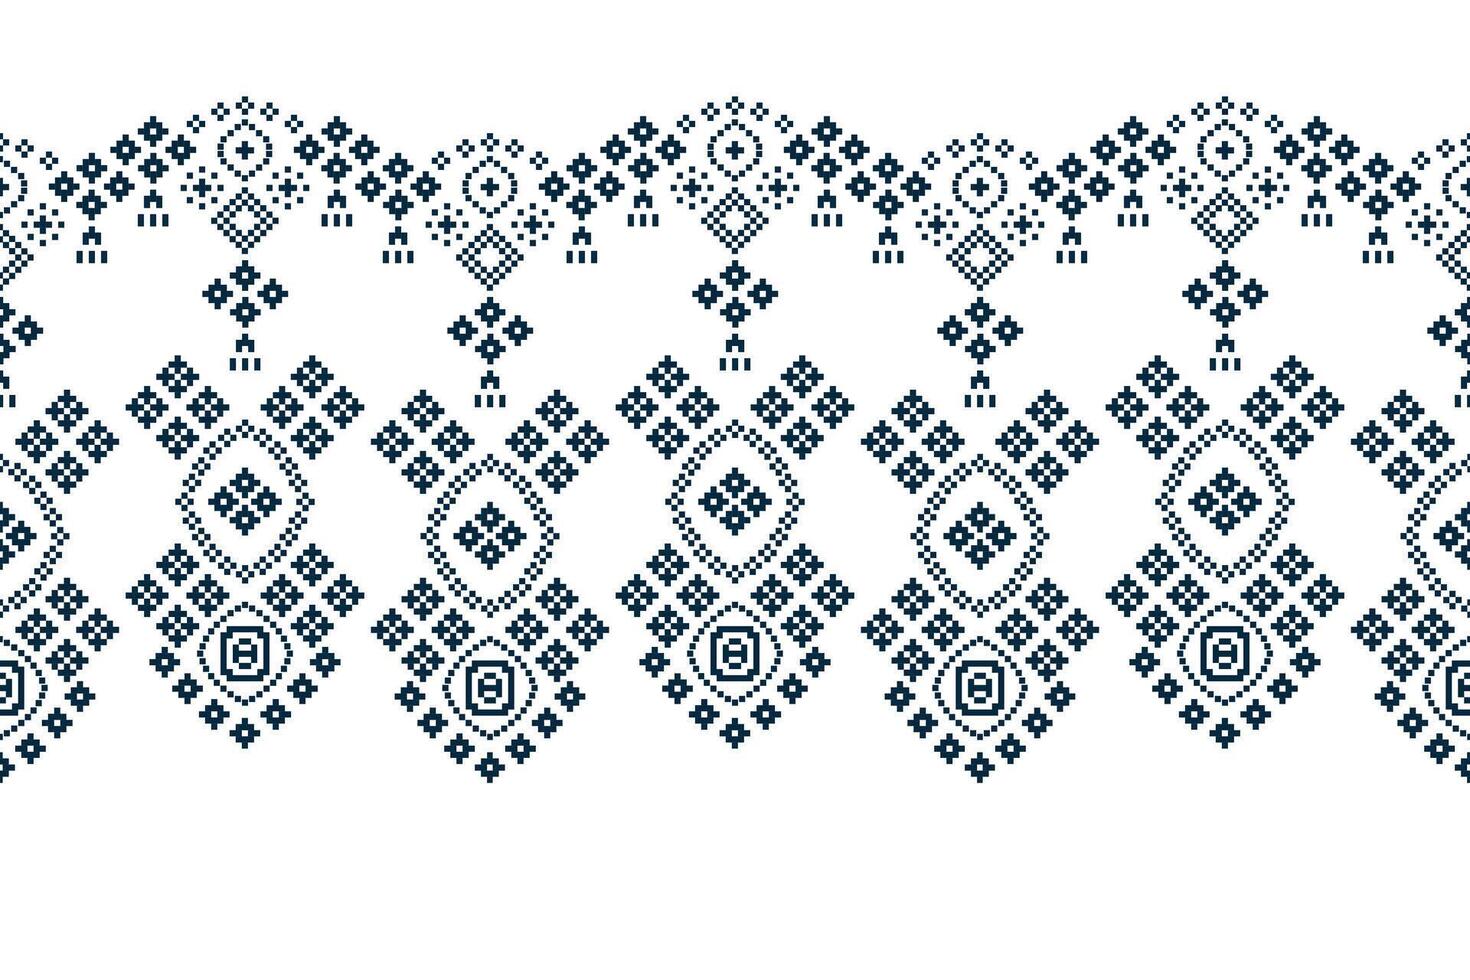 etnisch meetkundig kleding stof patroon kruis steek.ikat borduurwerk etnisch oosters pixel patroon wit achtergrond. abstract,vector,illustratie. textuur,kleding,decoratie,motieven,zijde behang. vector